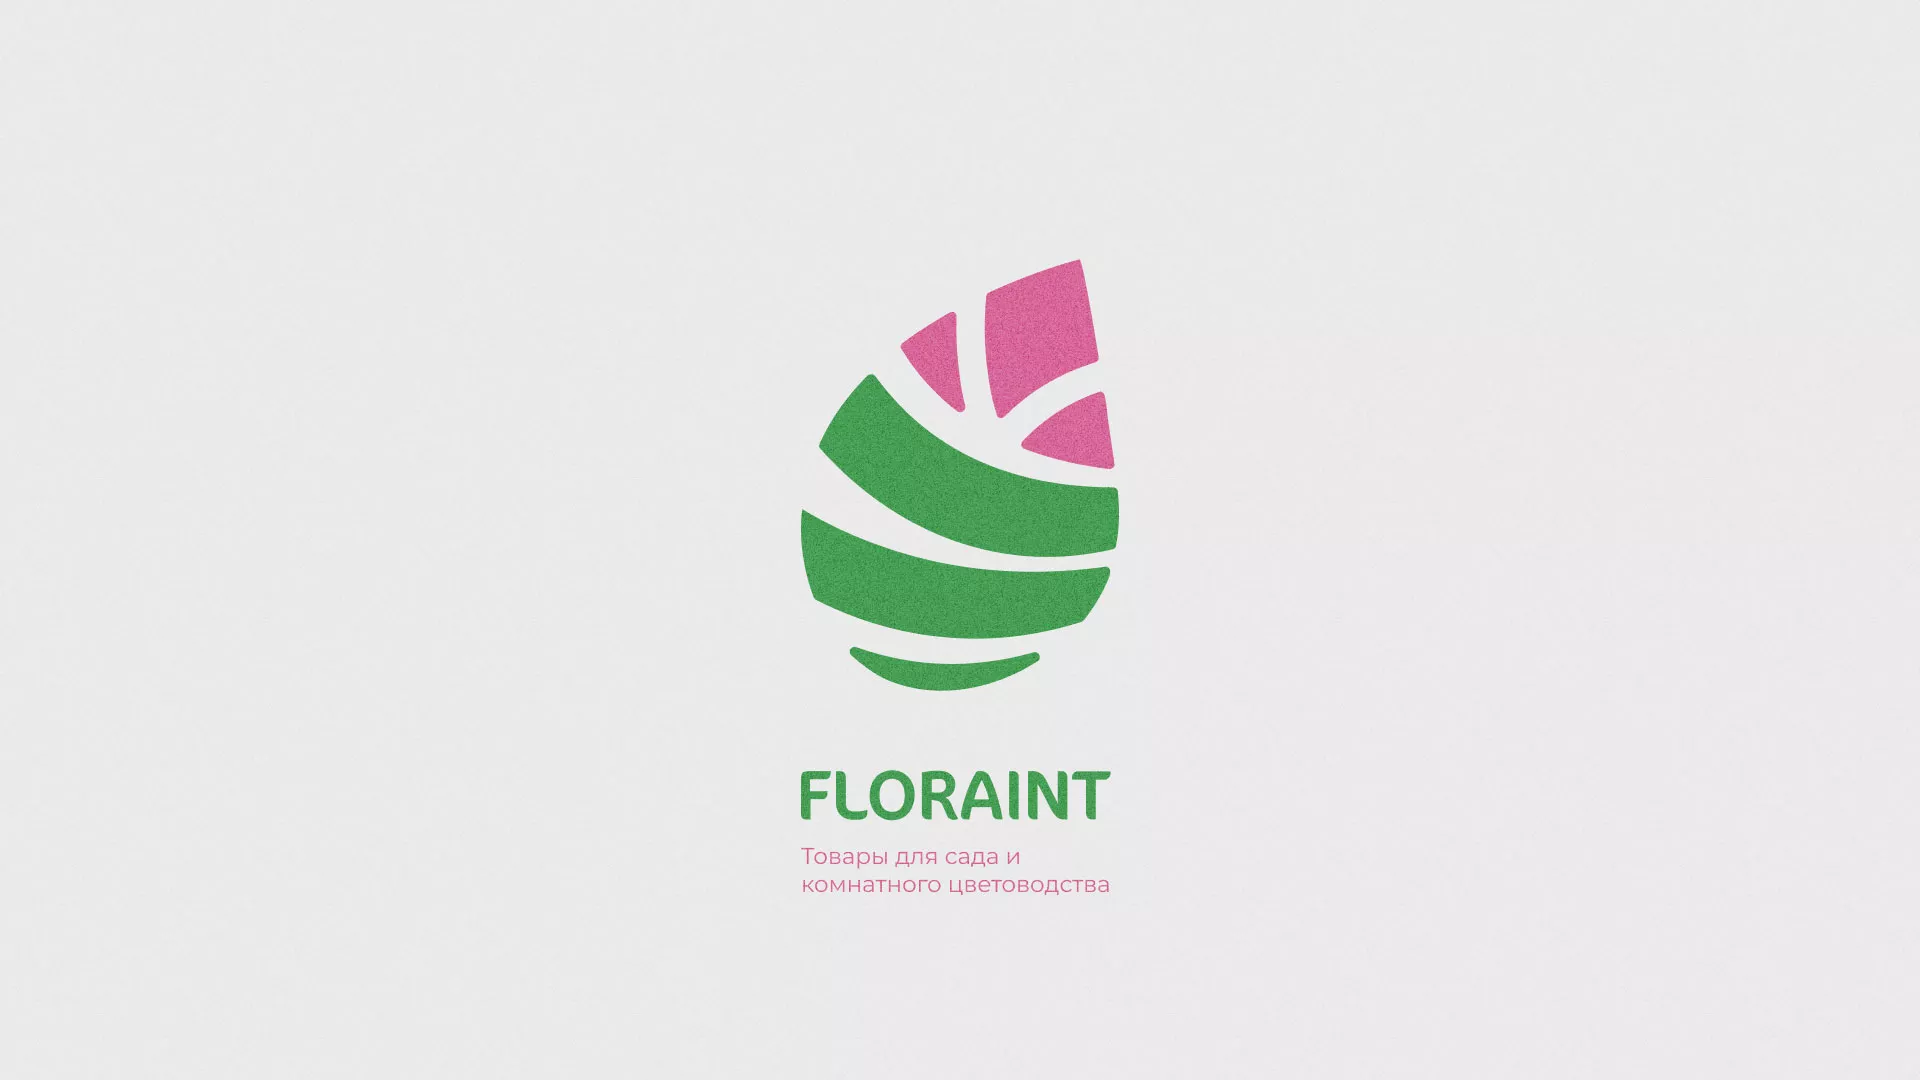 Разработка оформления профиля Instagram для магазина «Floraint» в Ялте